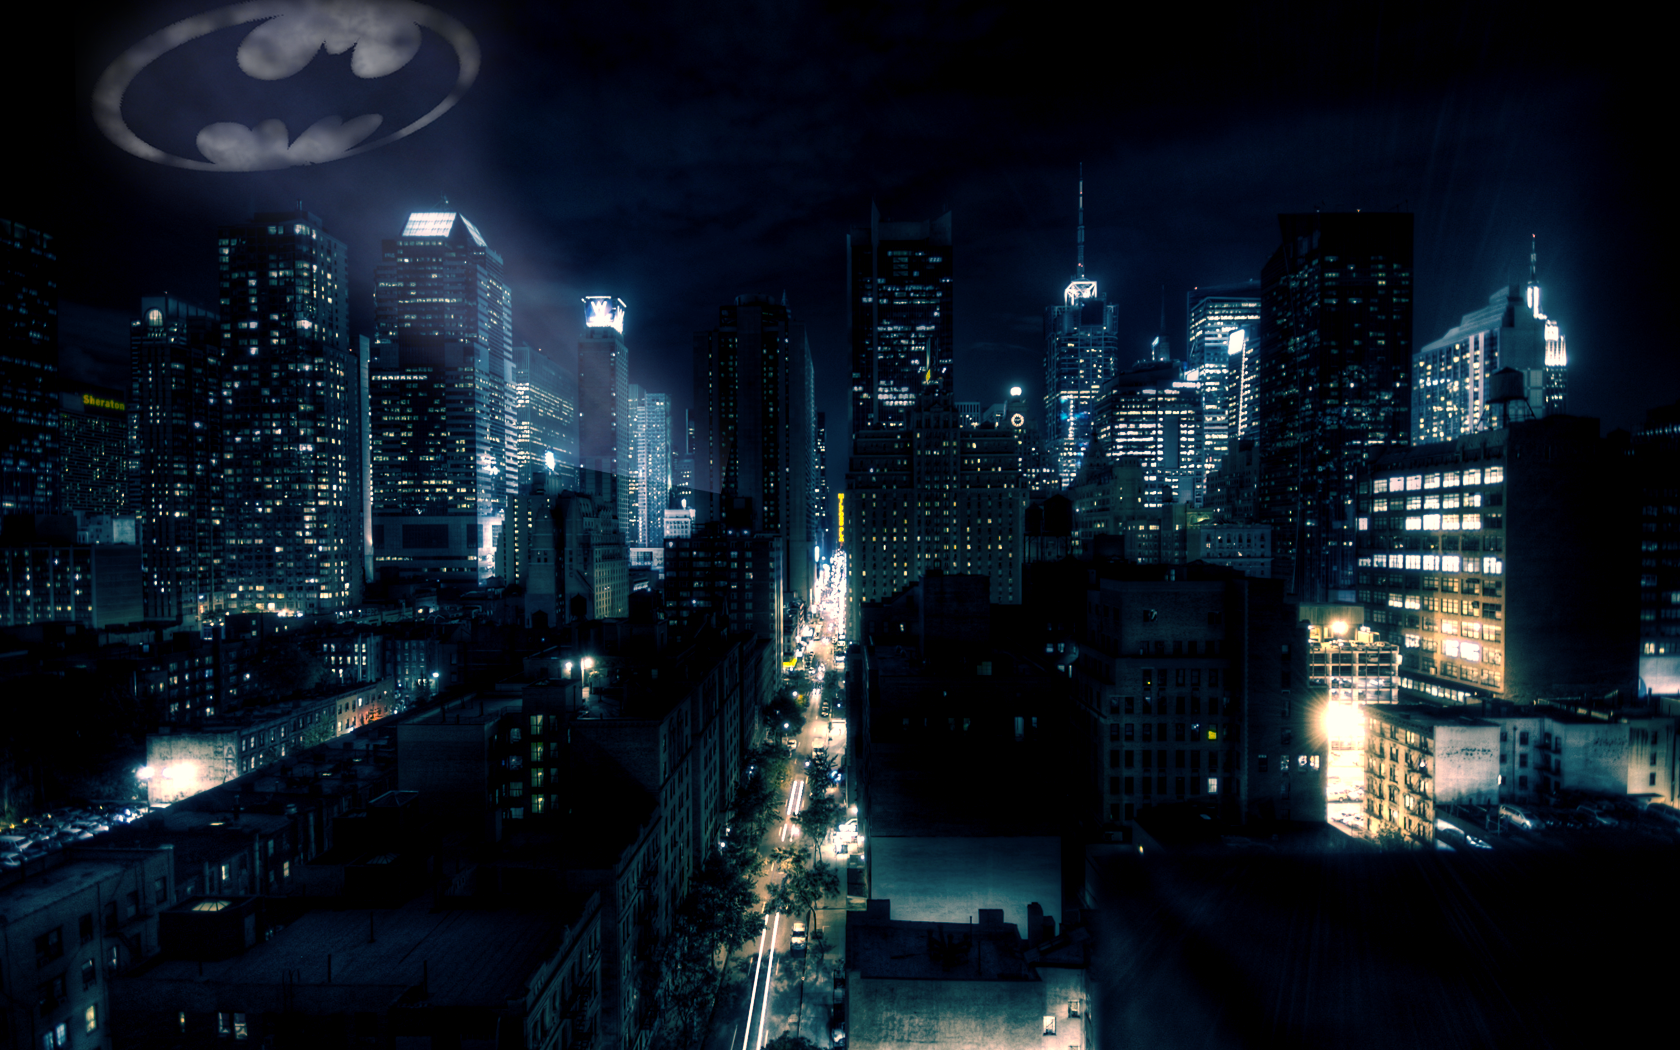 Bigger Gotham City by superglamorous on